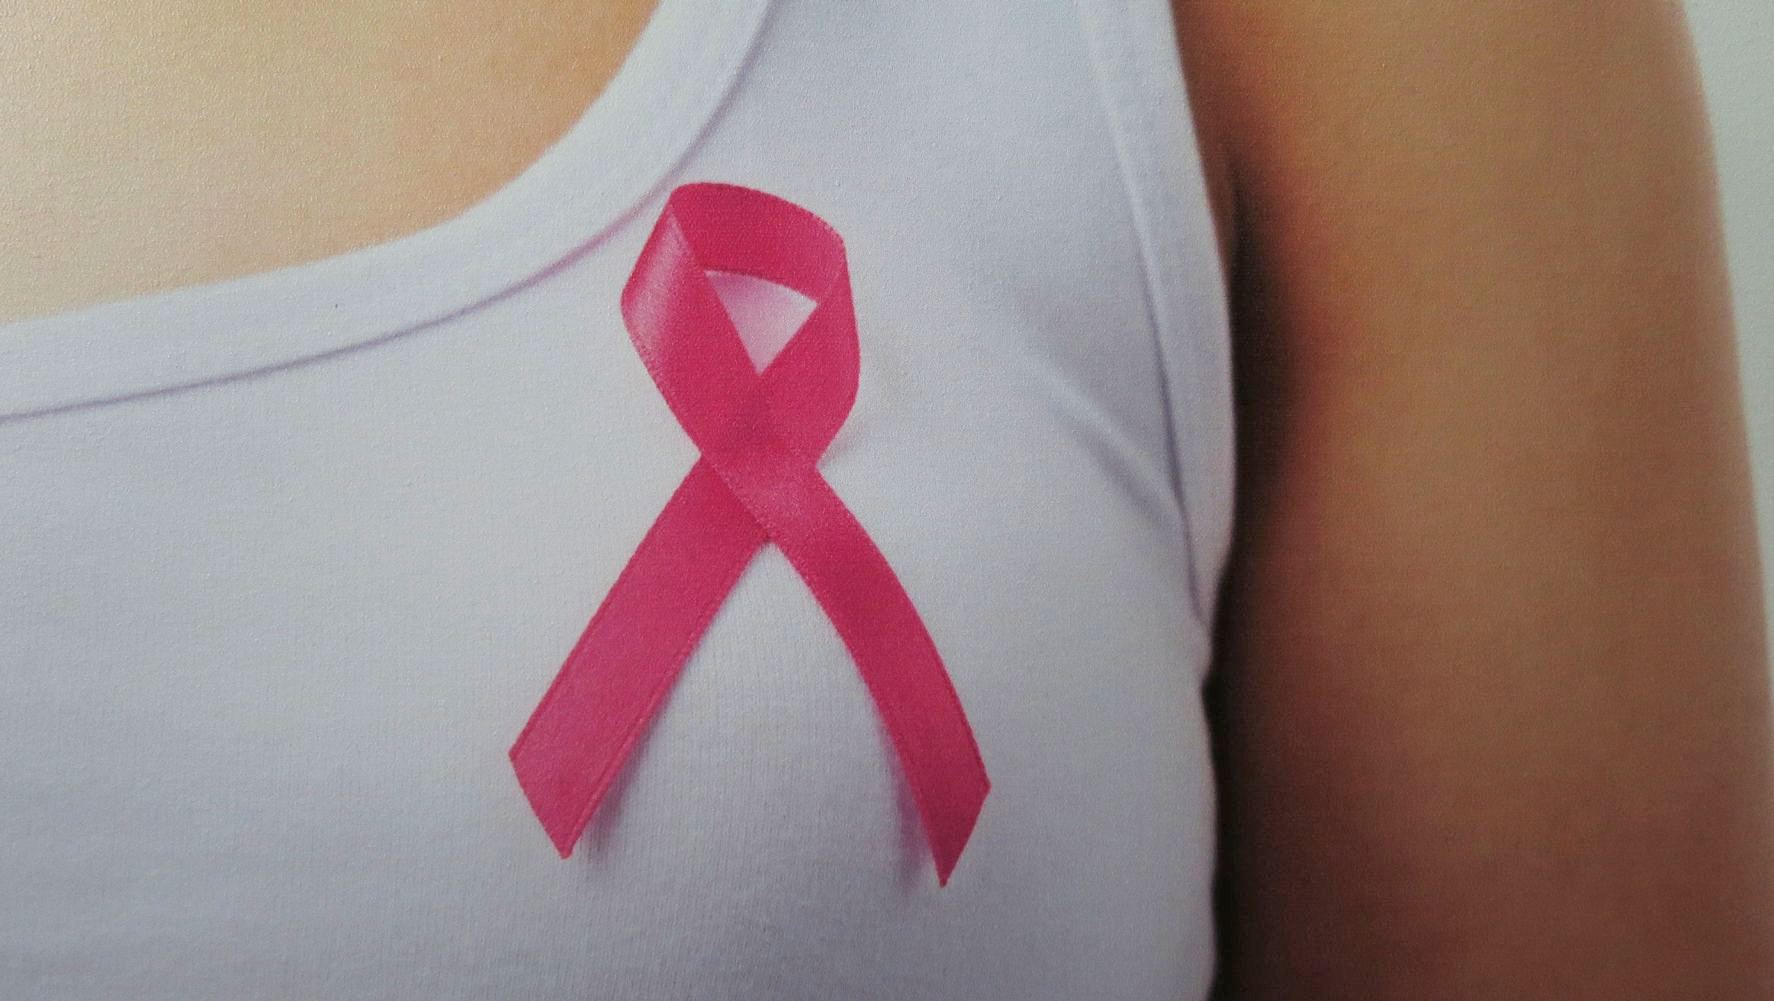 Pink Ribbon - unikátní terapeutický cvičební program pro ženy s diagnózou rakoviny prsu